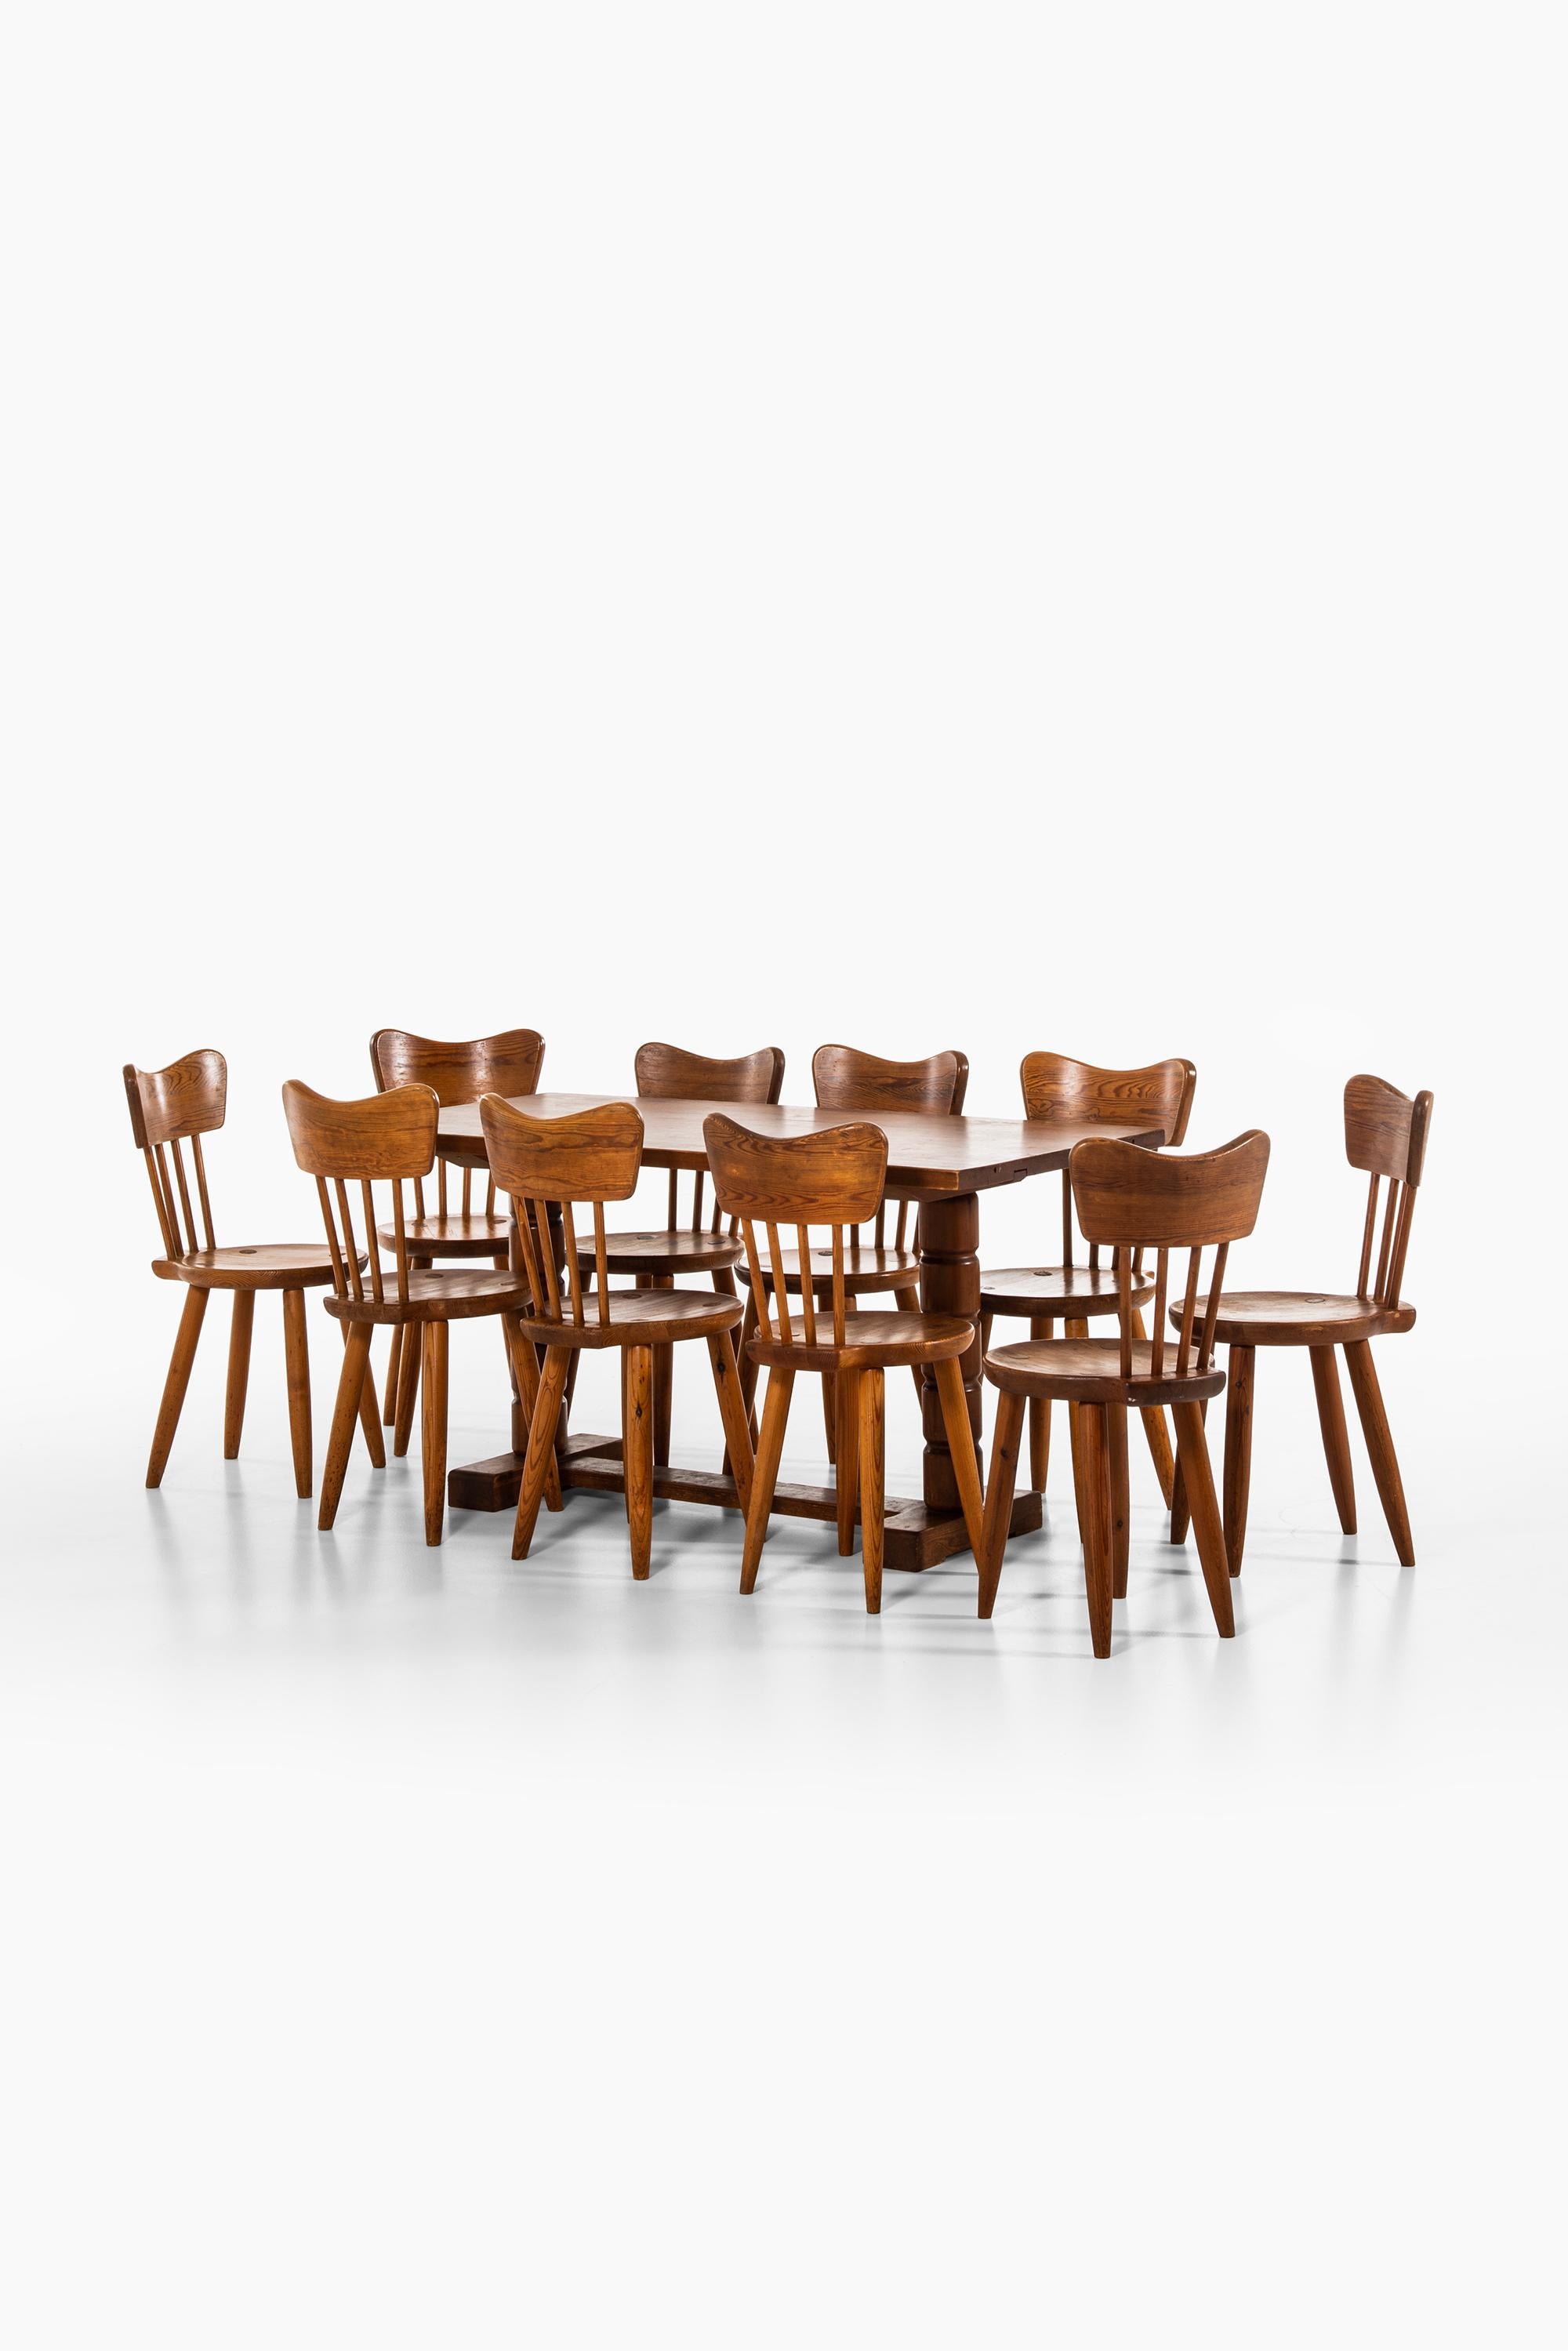 Pine Torsten Claeson Dining Chairs by Steneby Hemslöjd in Sweden For Sale